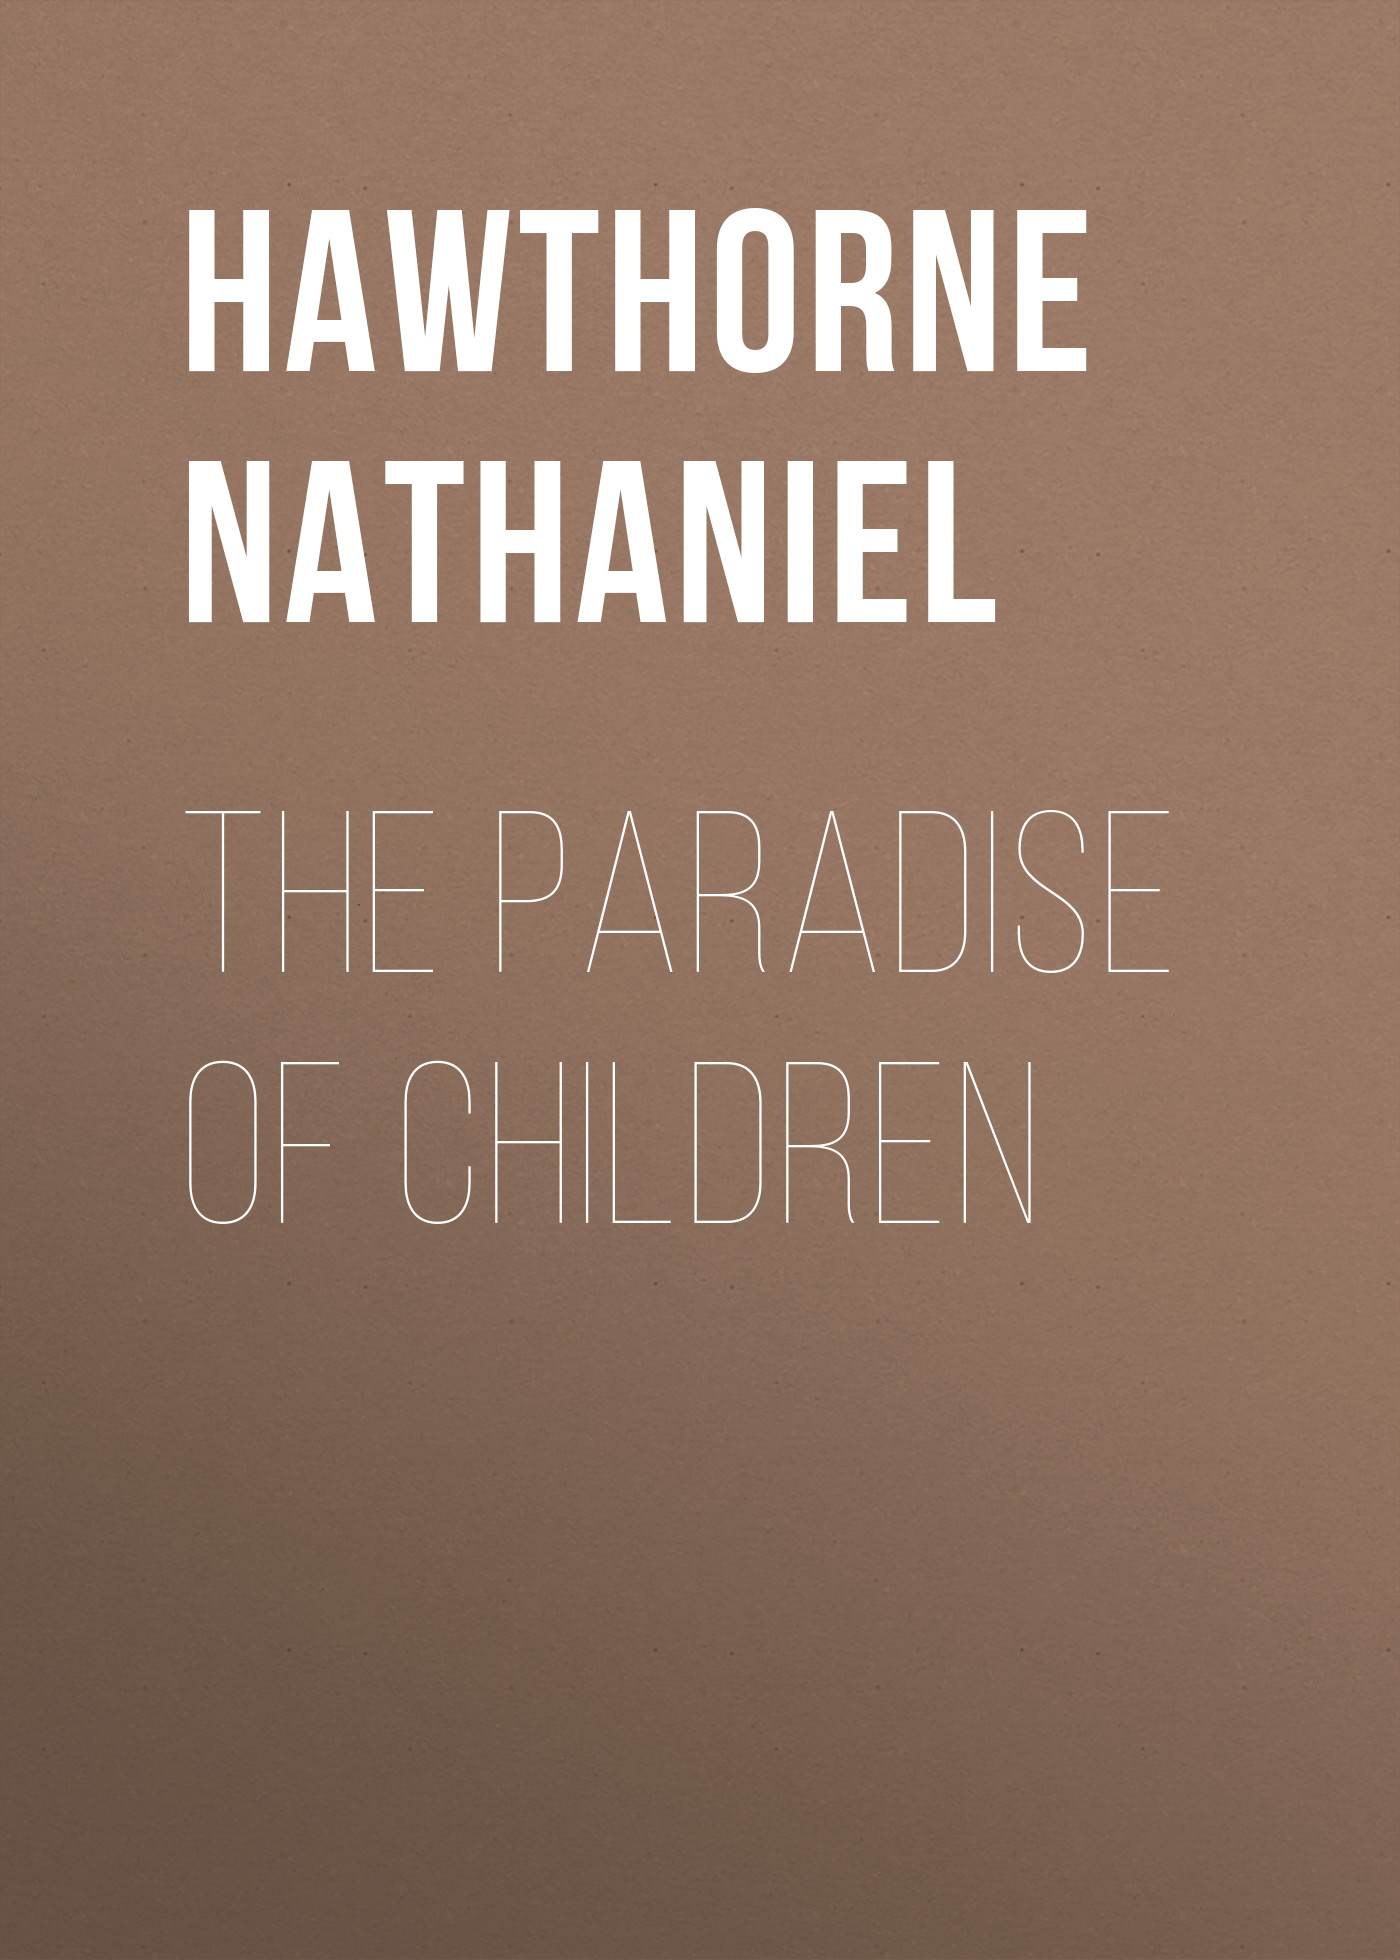 Книга The Paradise of Children из серии , созданная Nathaniel Hawthorne, может относится к жанру Литература 19 века, Зарубежная старинная литература, Зарубежная классика, Зарубежные детские книги. Стоимость электронной книги The Paradise of Children с идентификатором 25559884 составляет 0 руб.